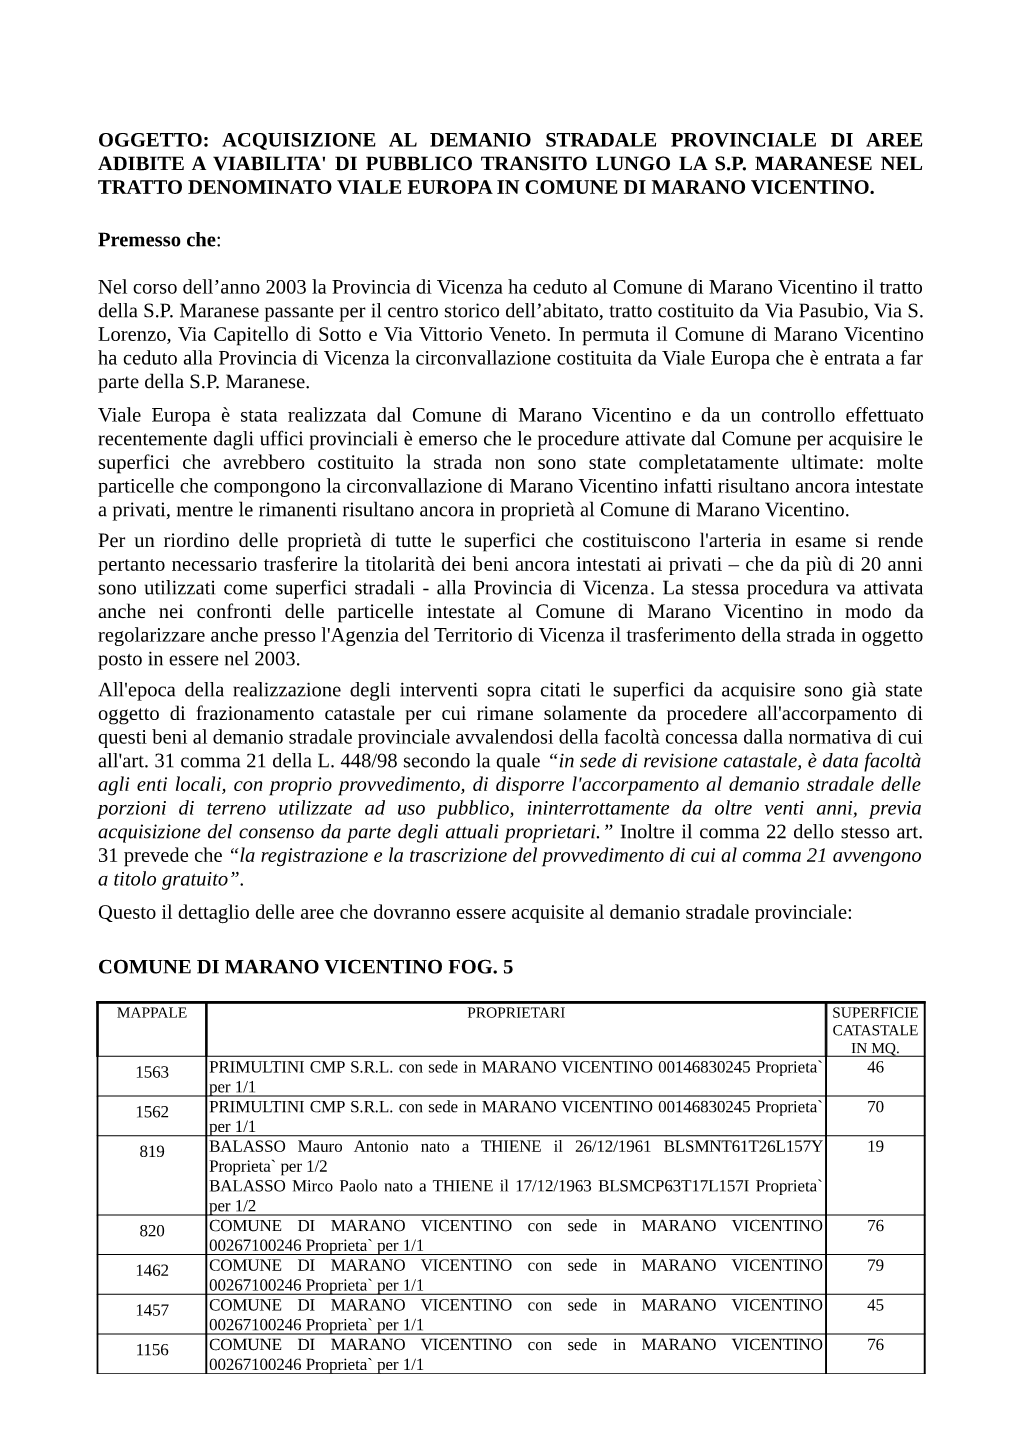 Oggetto: Acquisizione Al Demanio Stradale Provinciale Di Aree Adibite a Viabilita' Di Pubblico Transito Lungo La S.P